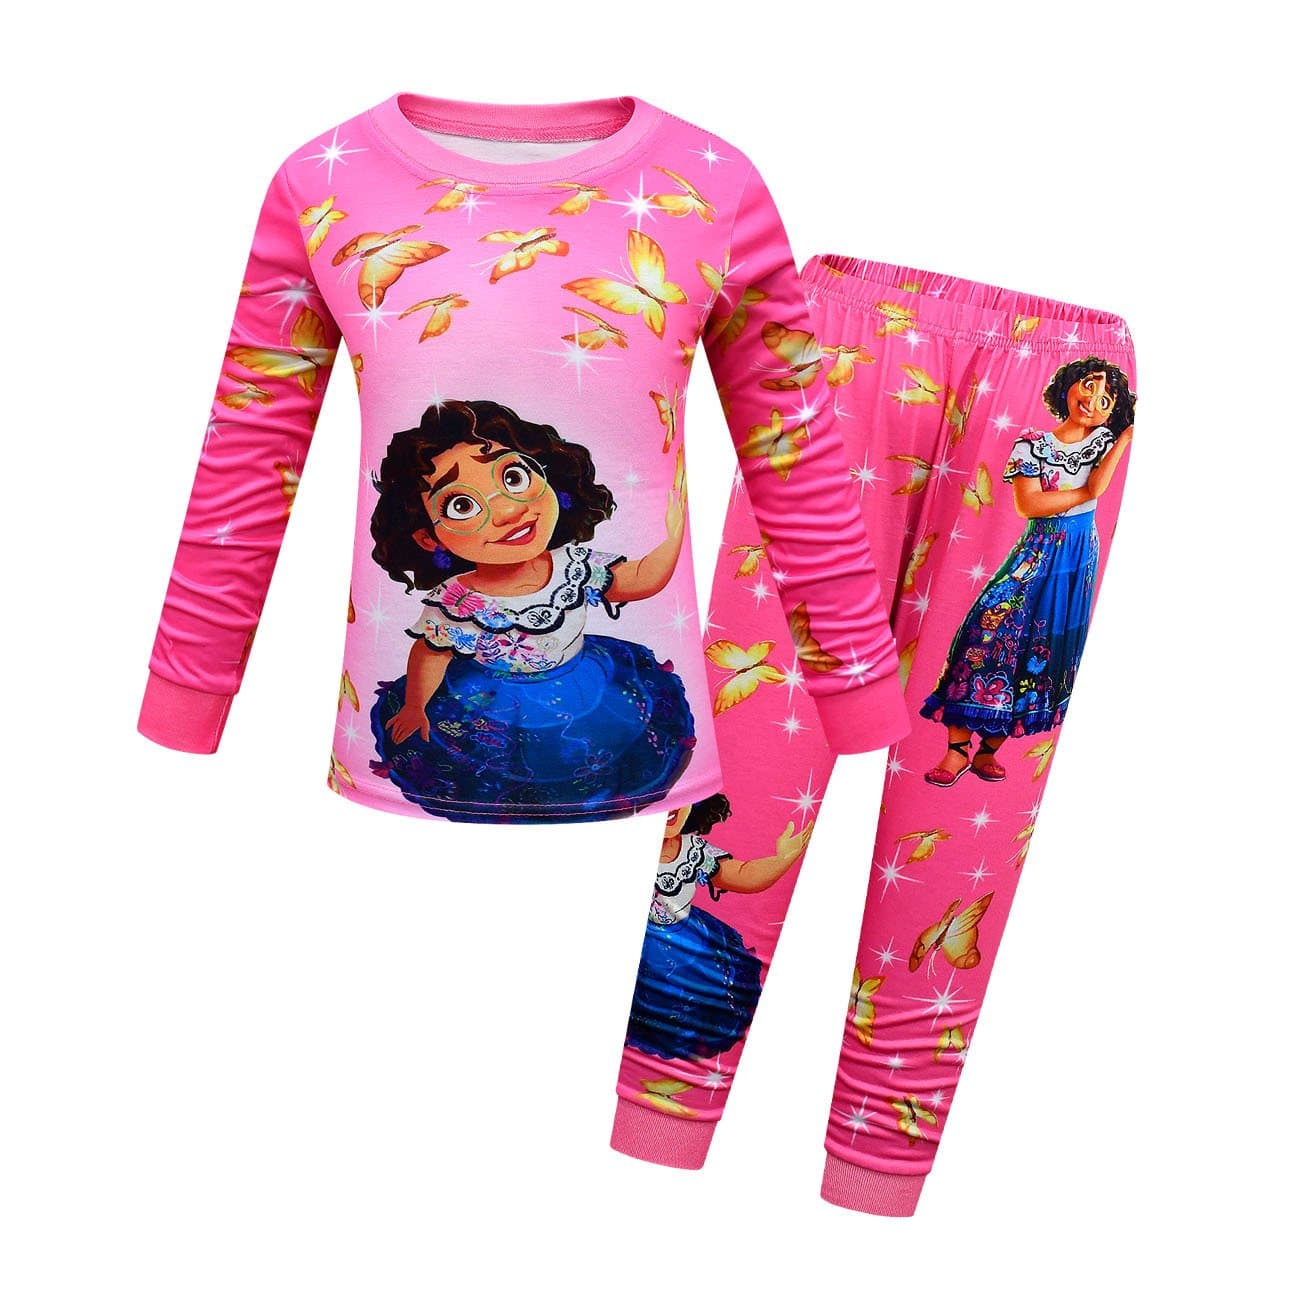 Encanto Pajama Kids Long Sleeve Two Pieces Pajama - Rose Red